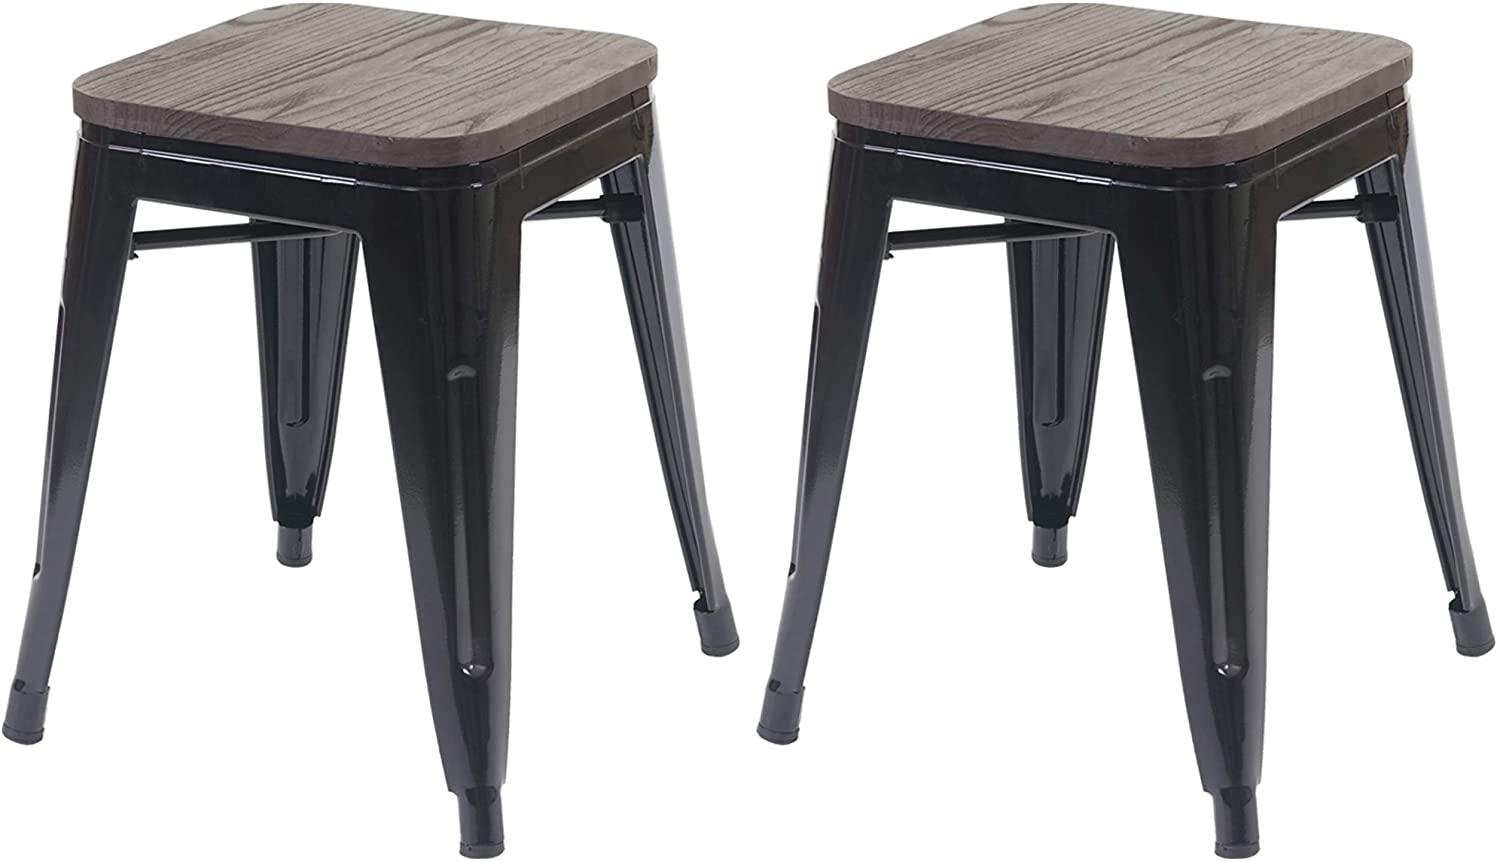 2er-Set Hocker HWC-A73 inkl. Holz-Sitzfläche, Metallhocker Sitzhocker, Metall Industriedesign stapelbar ~ schwarz Bild 1